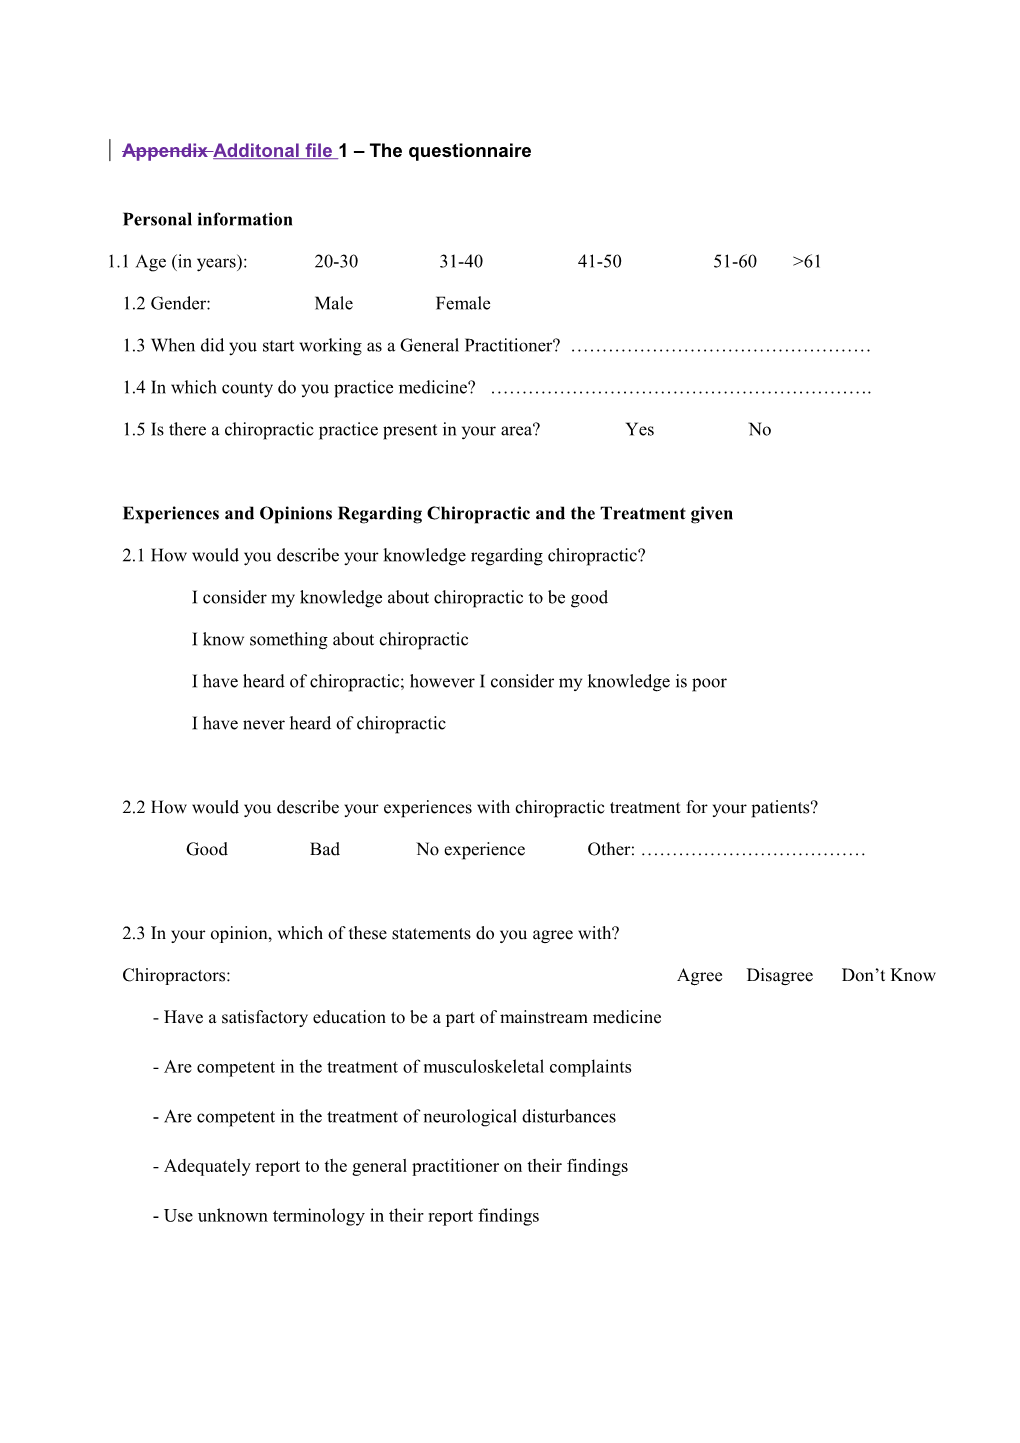 Appendix 1 the Questionnaire